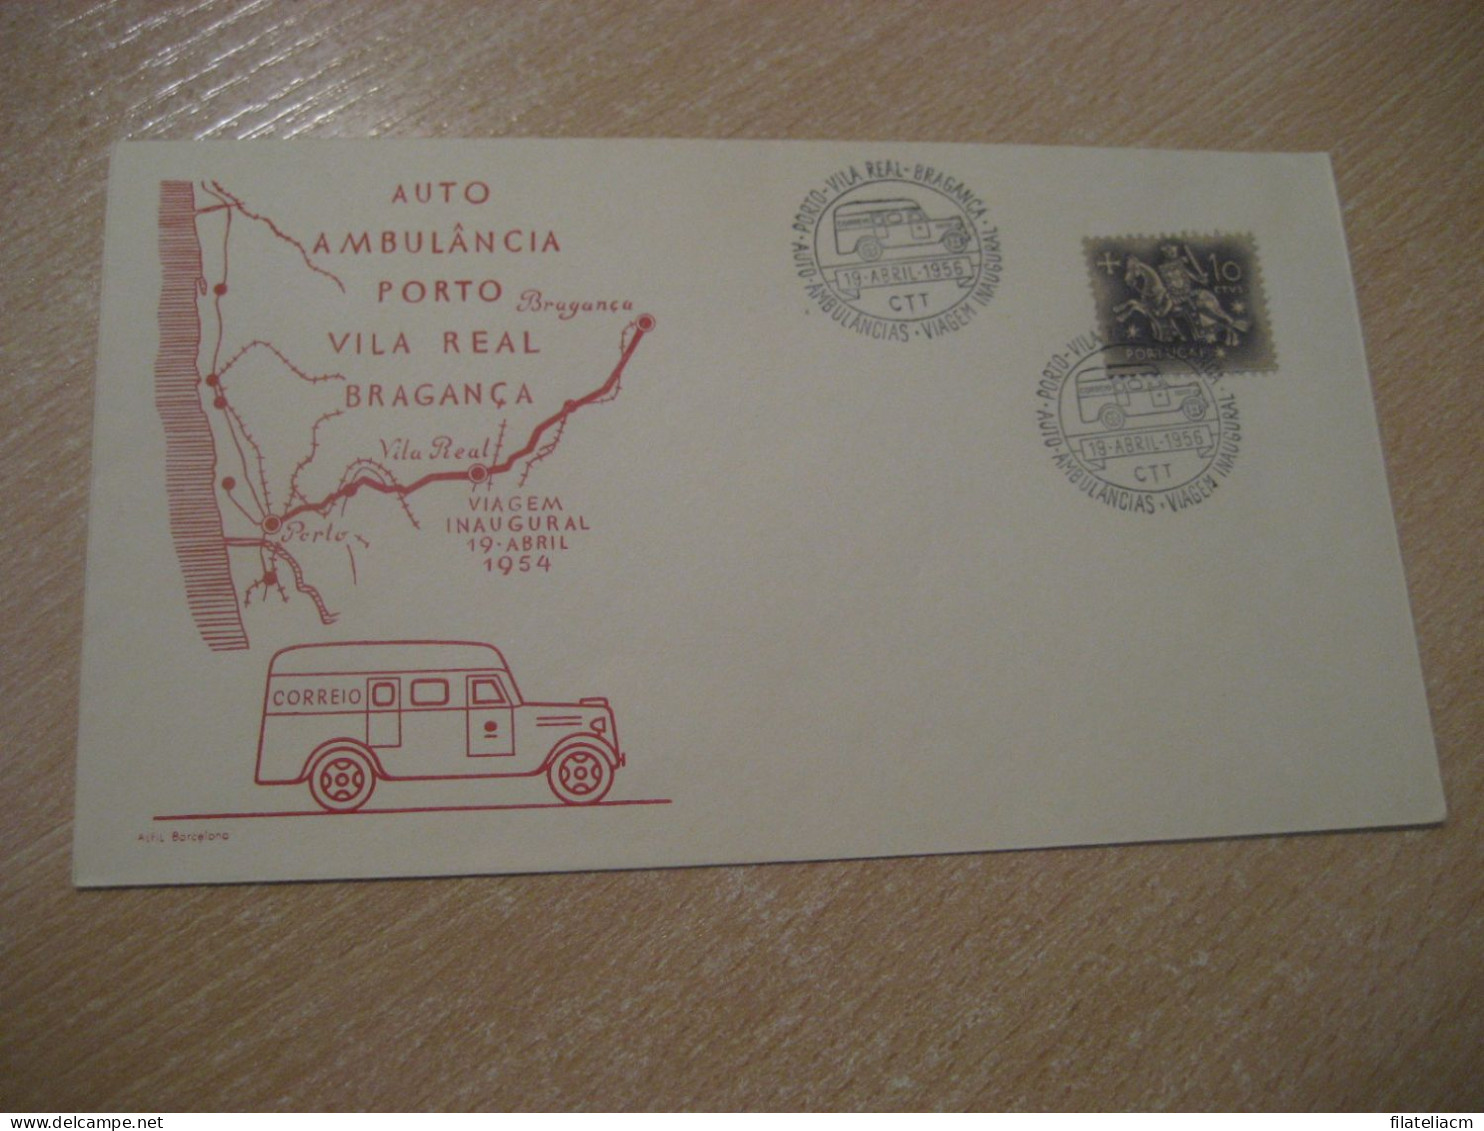 PORTO - VILA REAL - BRAGANÇA 1956 Viagem Inaugural Correi Auto Ambulancia Van Truck Cancel Cover PORTUGAL - LKW